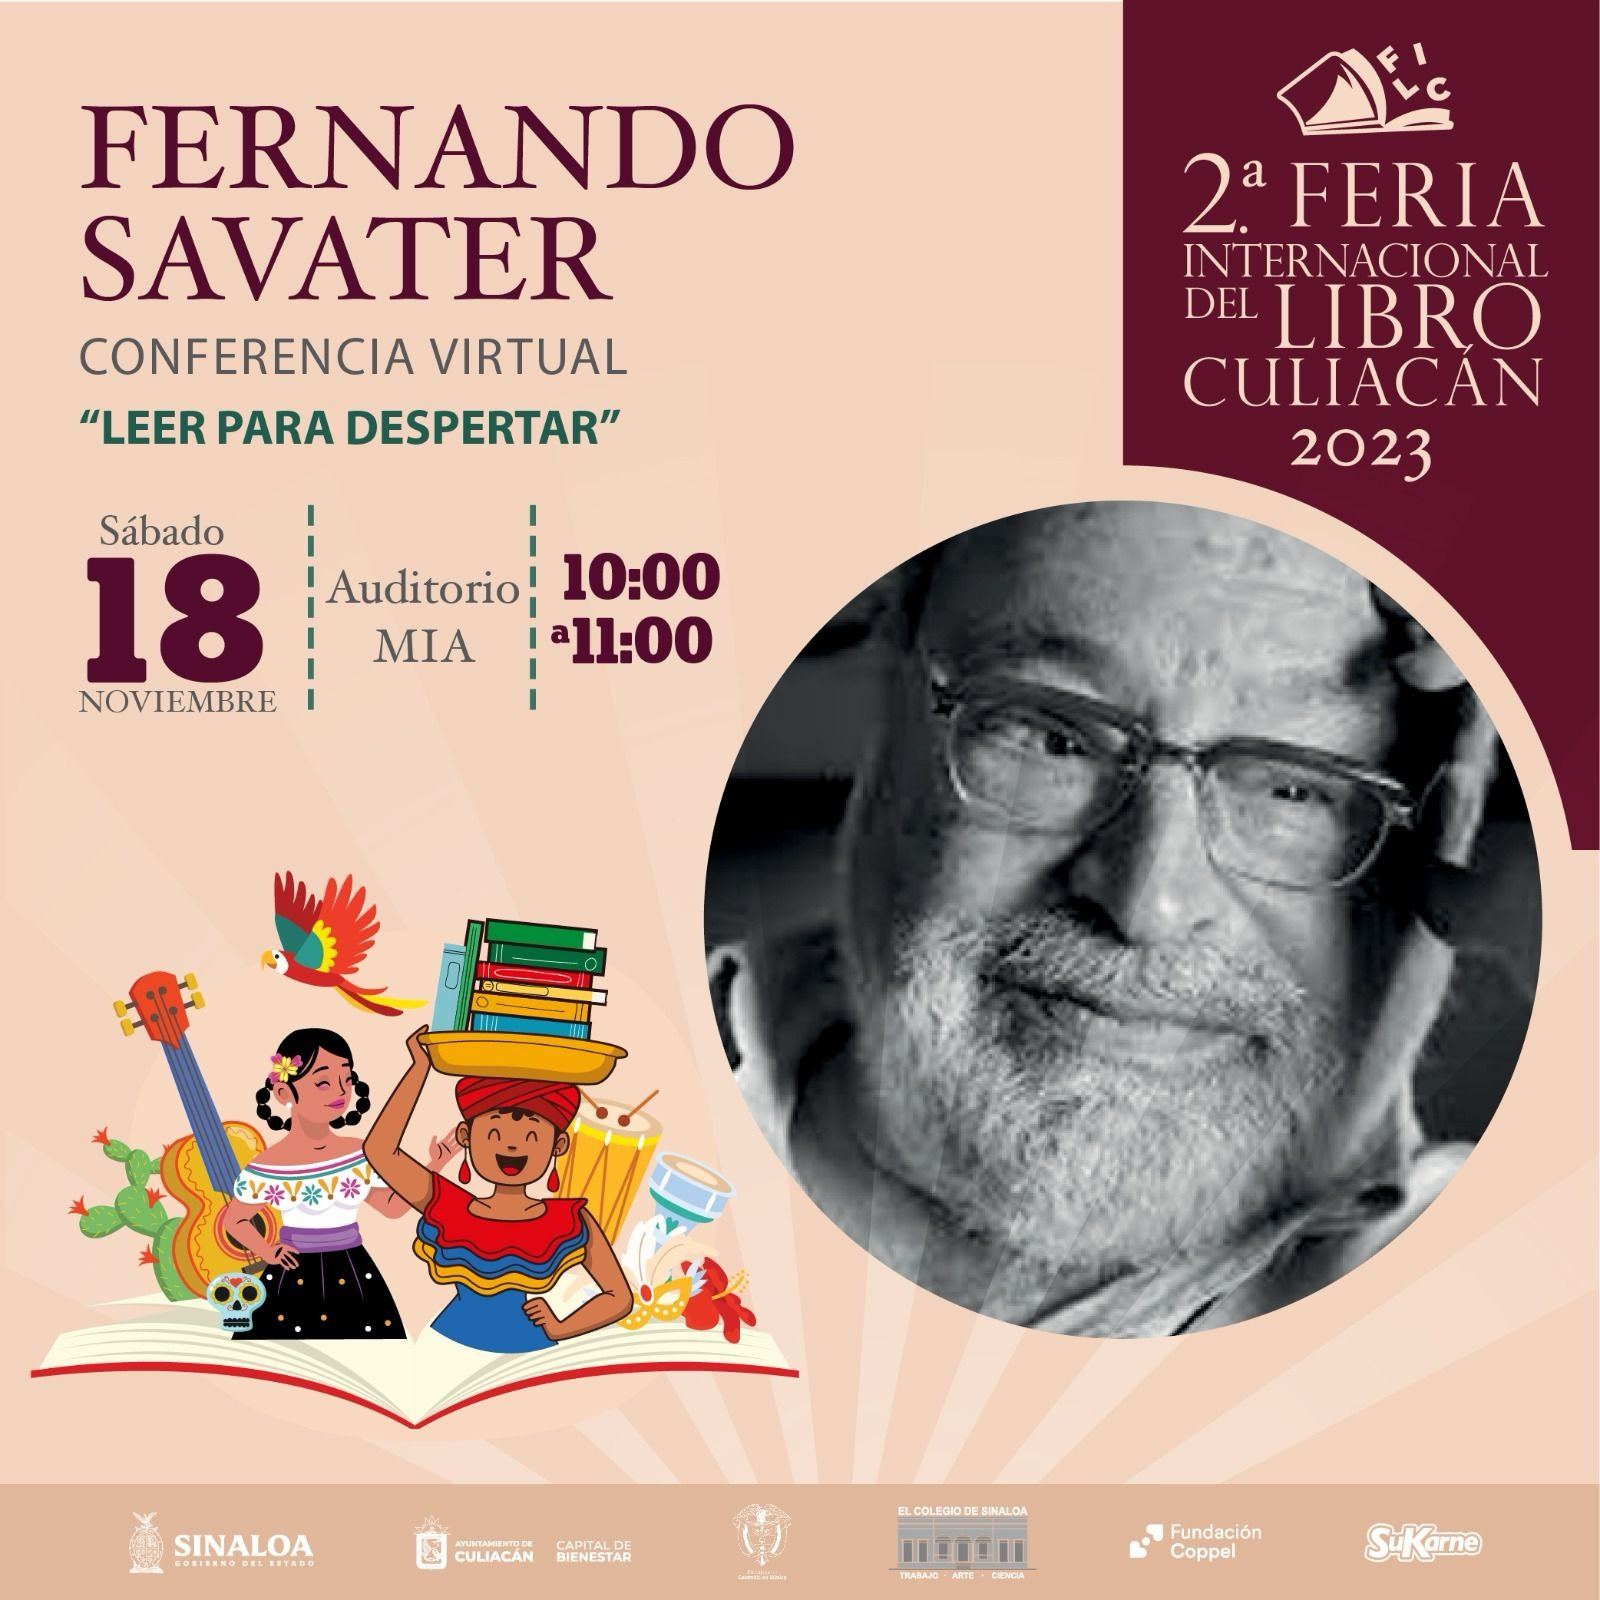 Fil Culiacán 2023 Invita Al Auditorio Mia A Disfrutar La Conferencia Virtual De Fernando Savater 0418